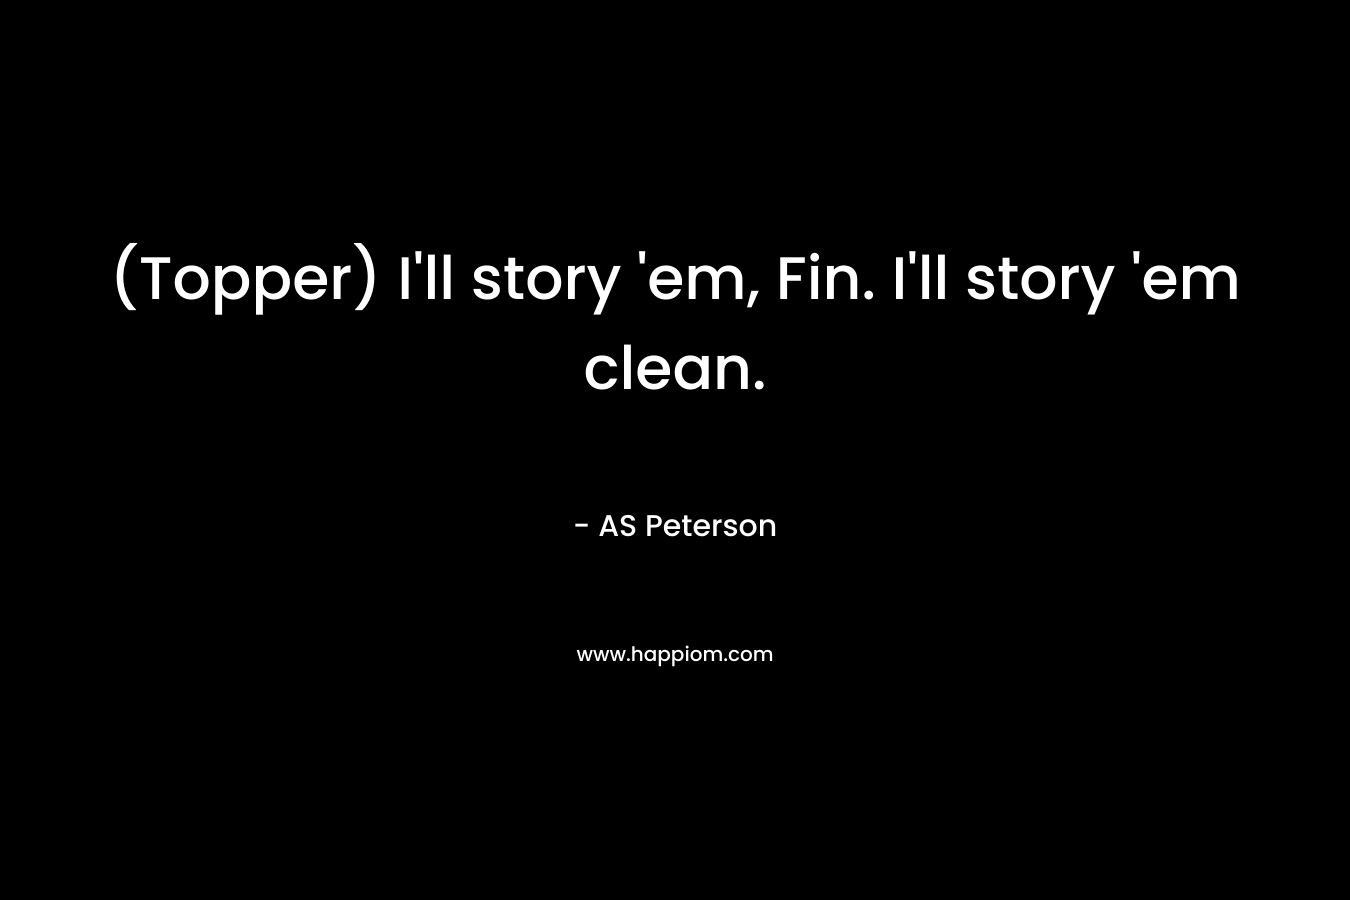 (Topper) I'll story 'em, Fin. I'll story 'em clean.